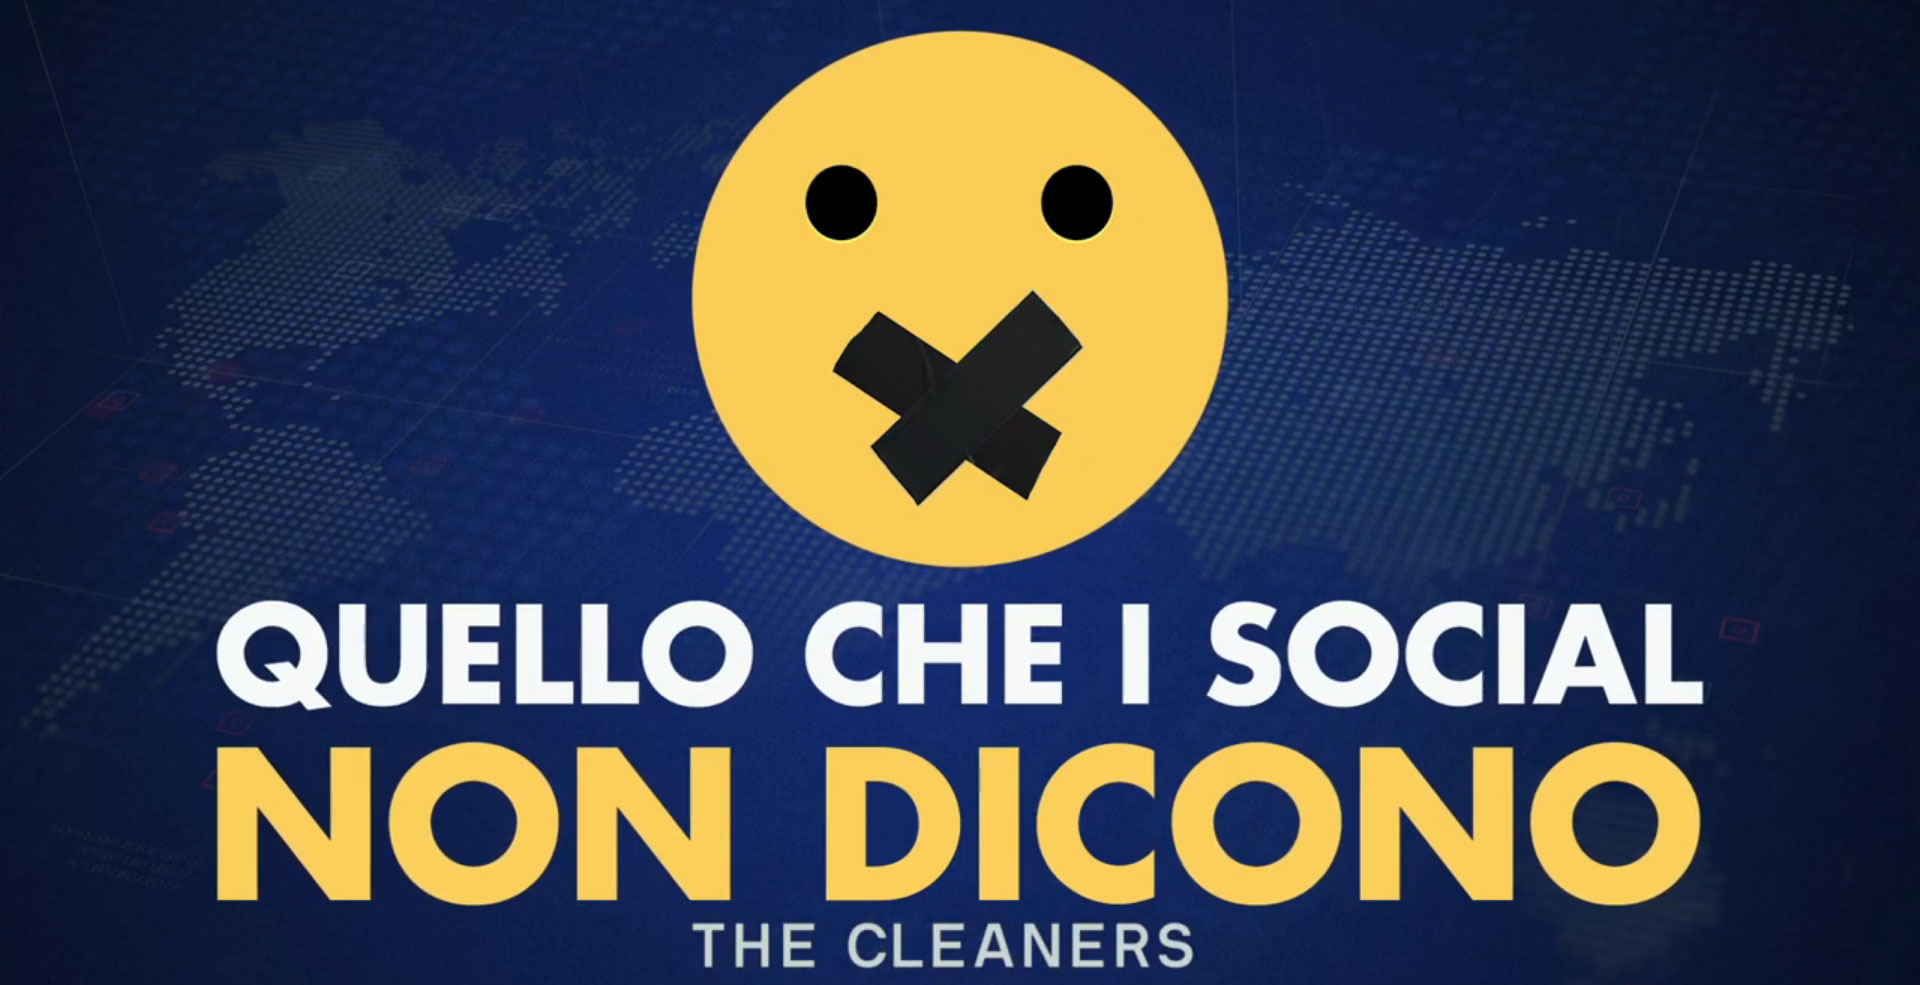 Quello che i social non dicono - The Cleaners